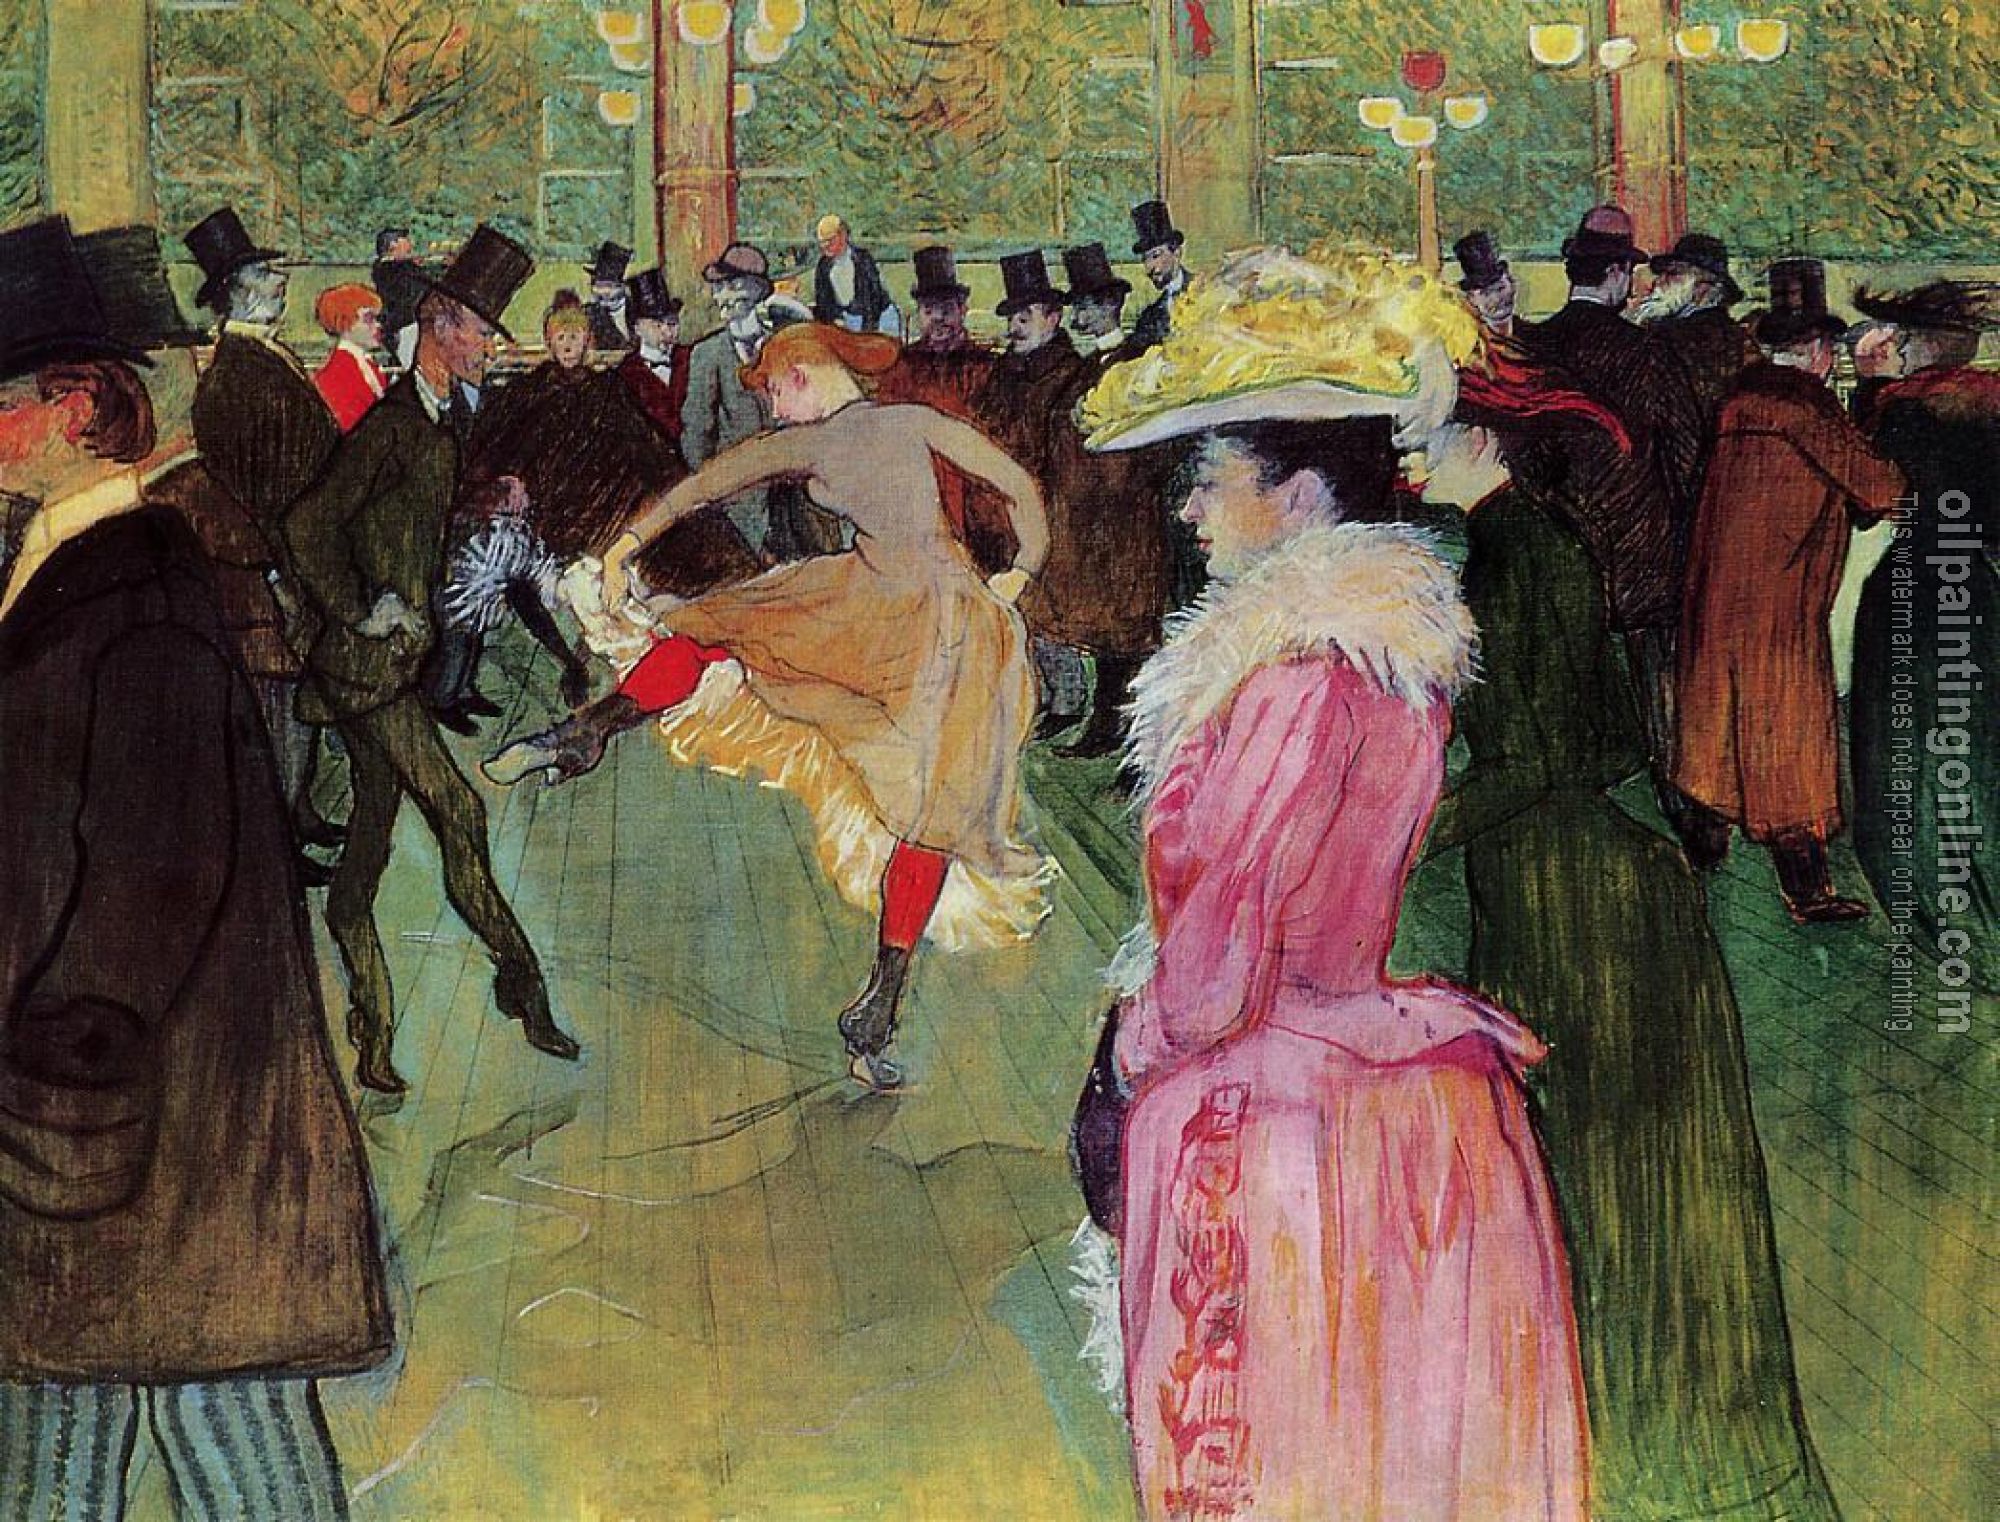 Toulouse-Lautrec, Henri de - Dance at the Moulin Rouge